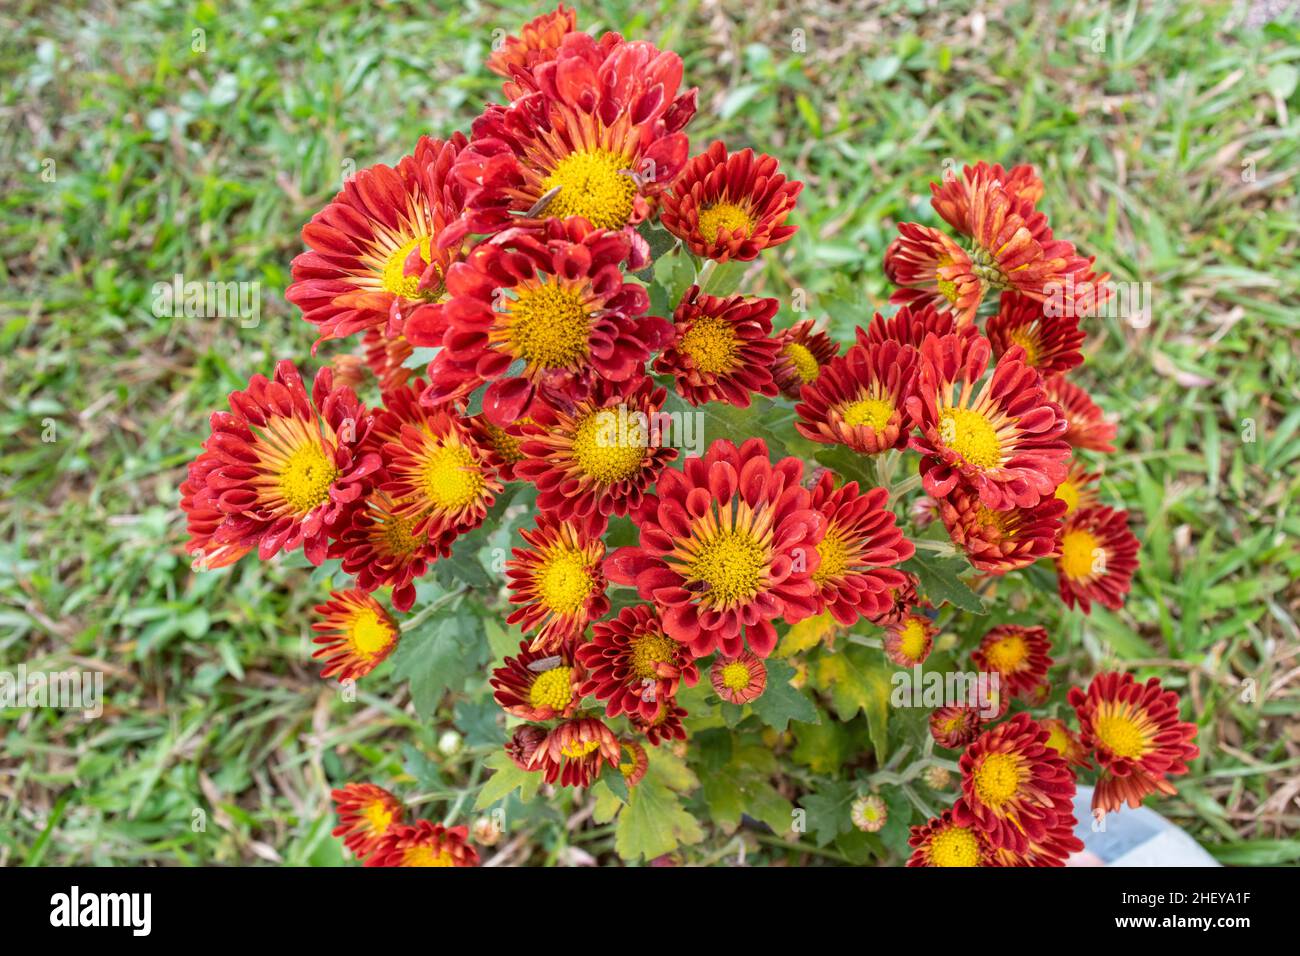 Beautiful Red Chrysanthemum flower in the garden Stock Photo